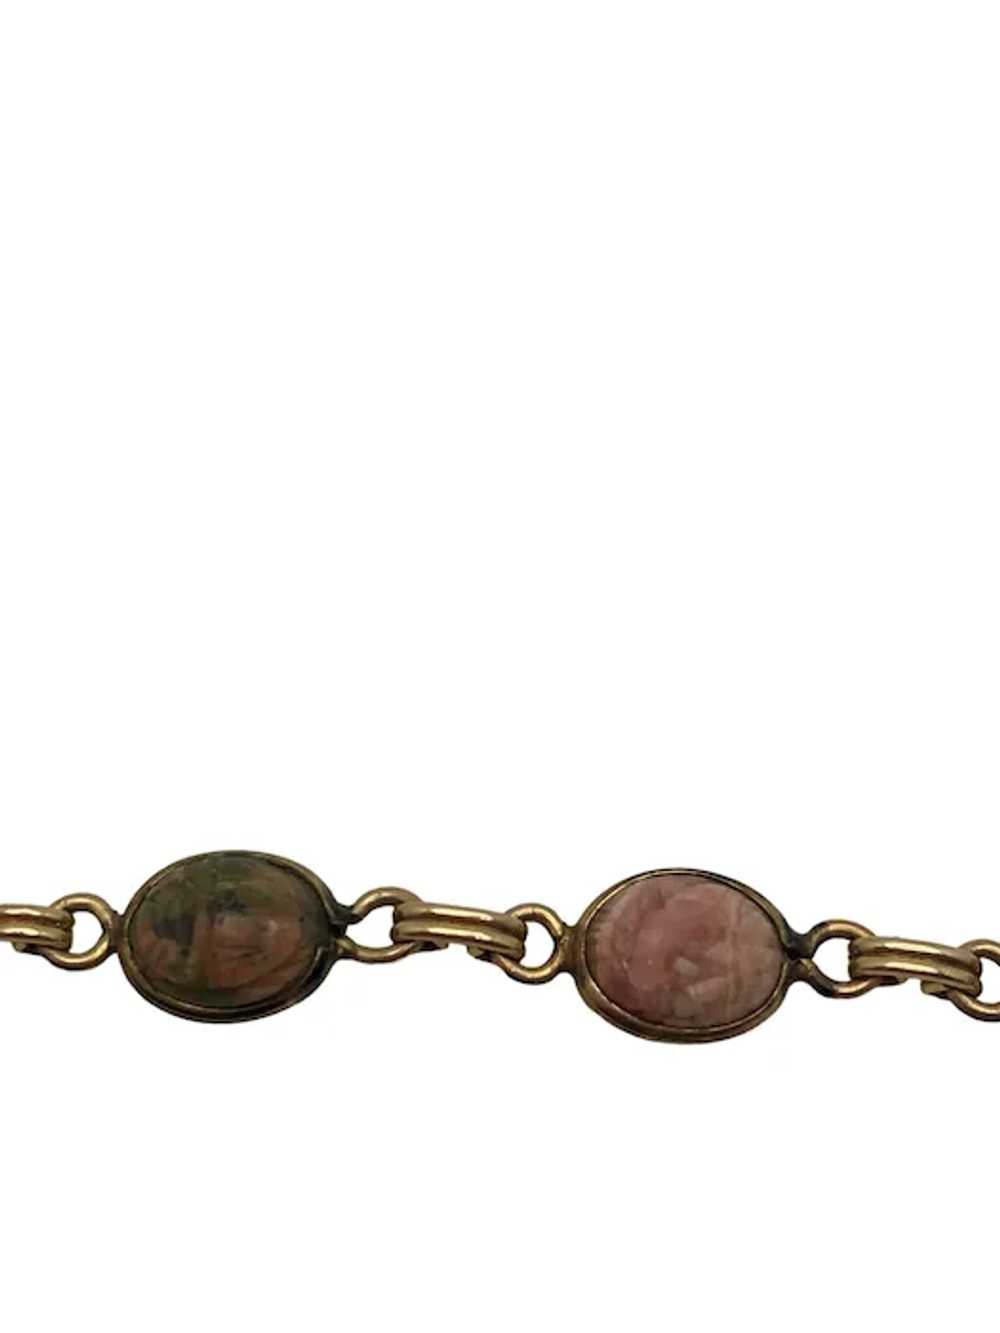 Vintage 12k Gold Filled Scarab Bracelet - image 6